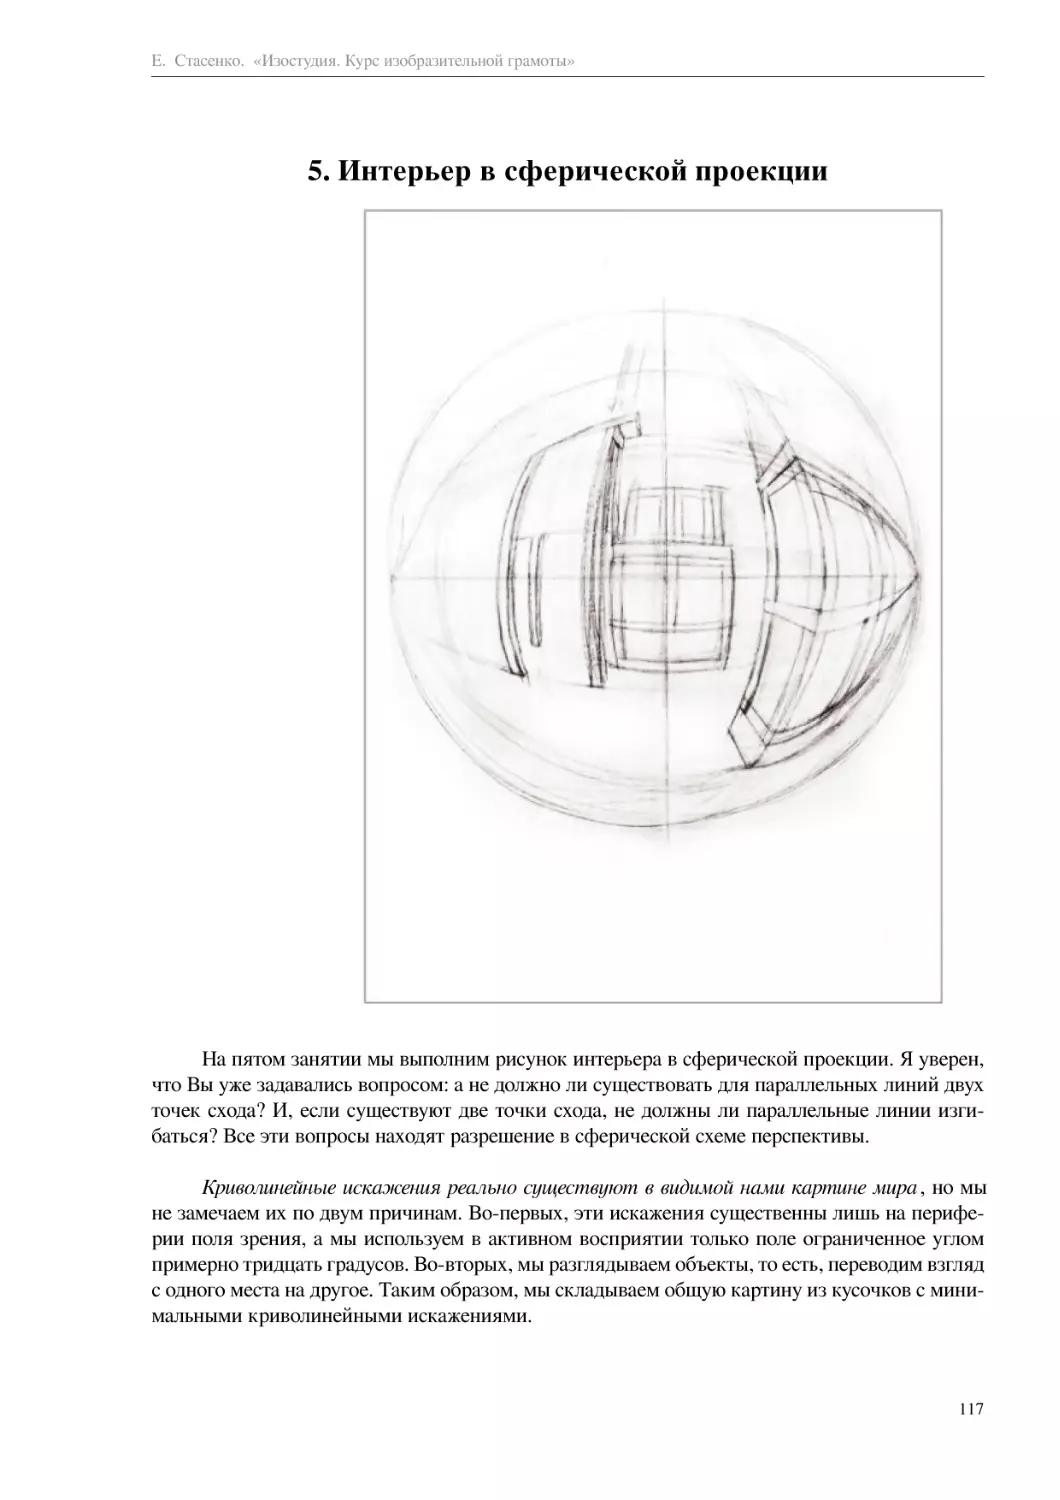 5. Интерьер в сферической проекции